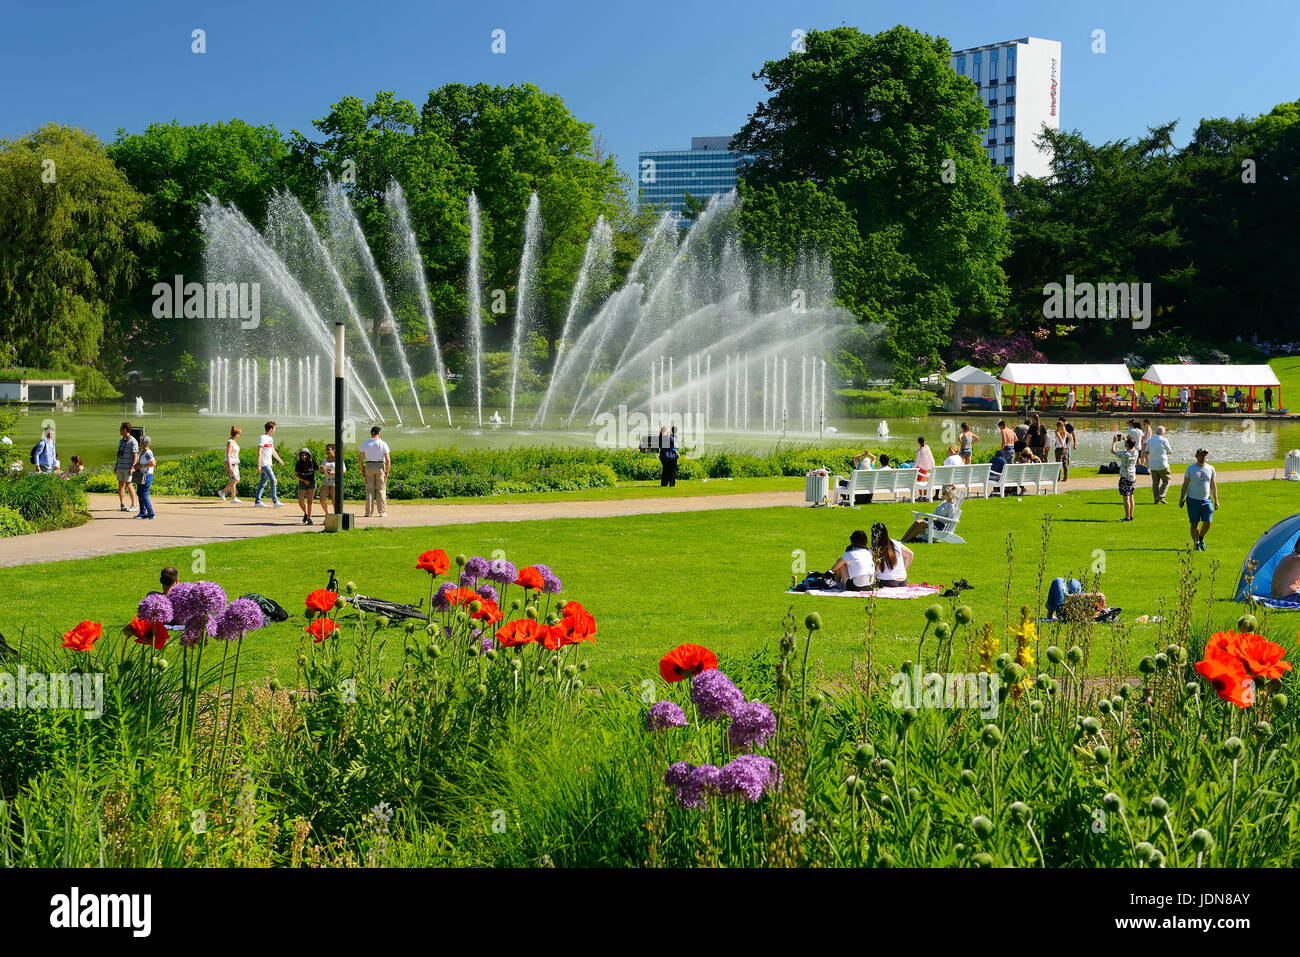 Water fountains in the park Planning un Blomen in Hamburg, Germany, Europe, Wasserspiele im Park Planten un Blomen in Hamburg, Deutschland, Europa Stock Photo